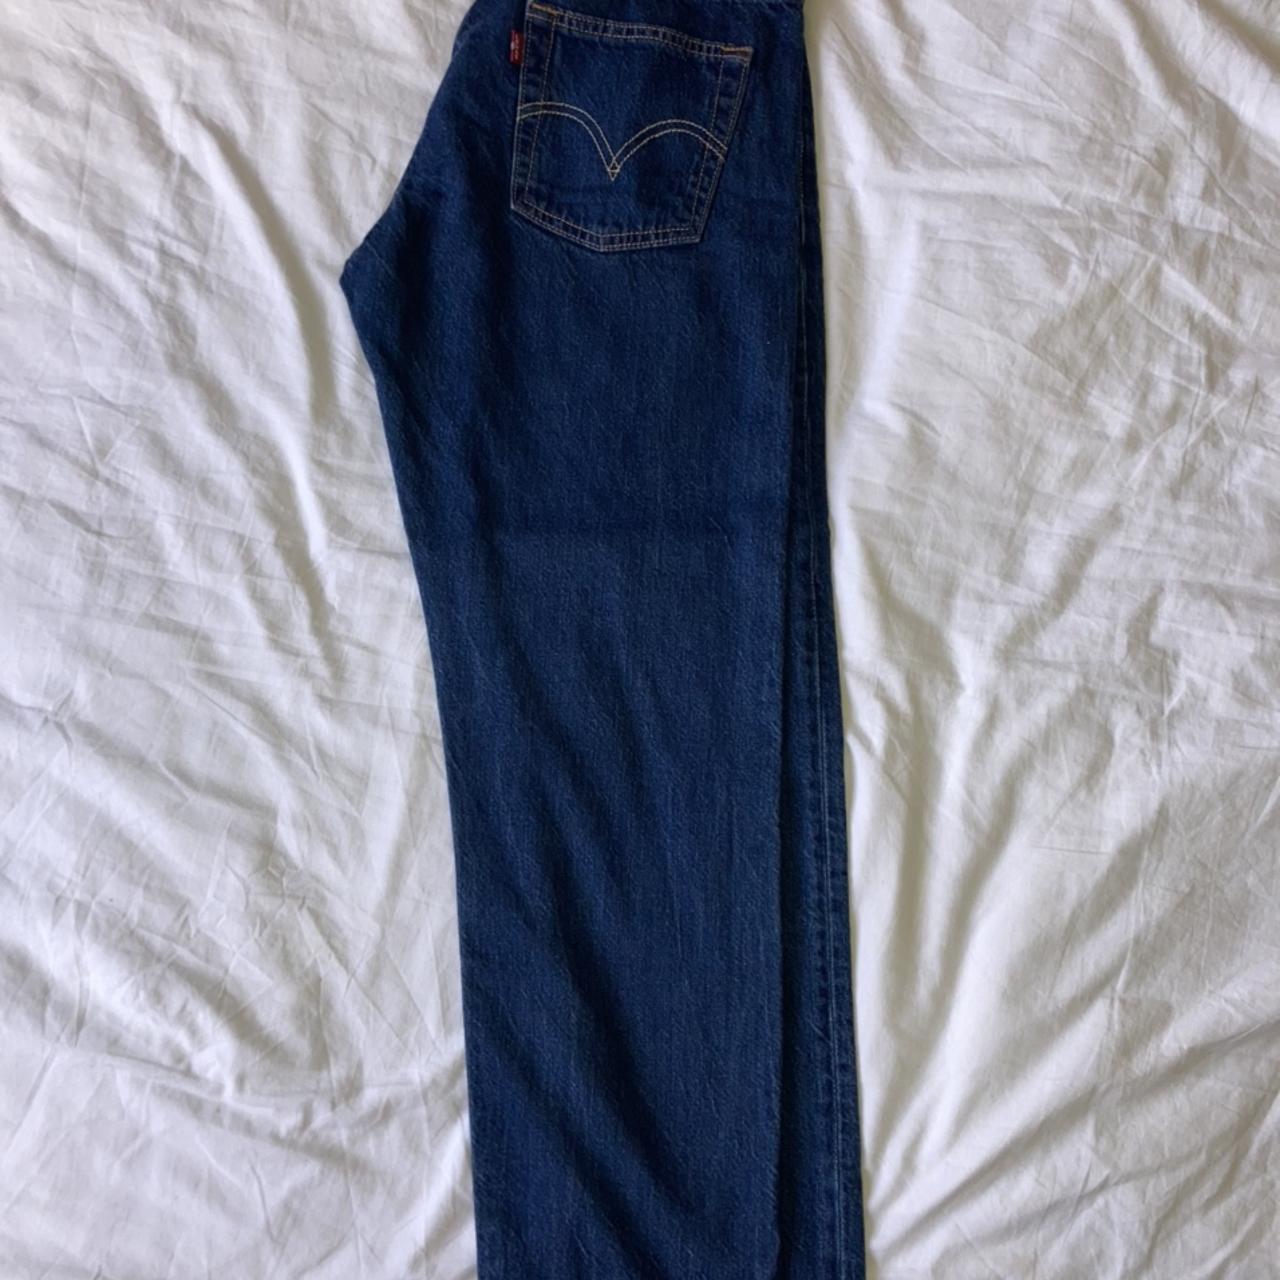 Levi’s 501 boyfriend cut (not high-waisted) jeans... - Depop